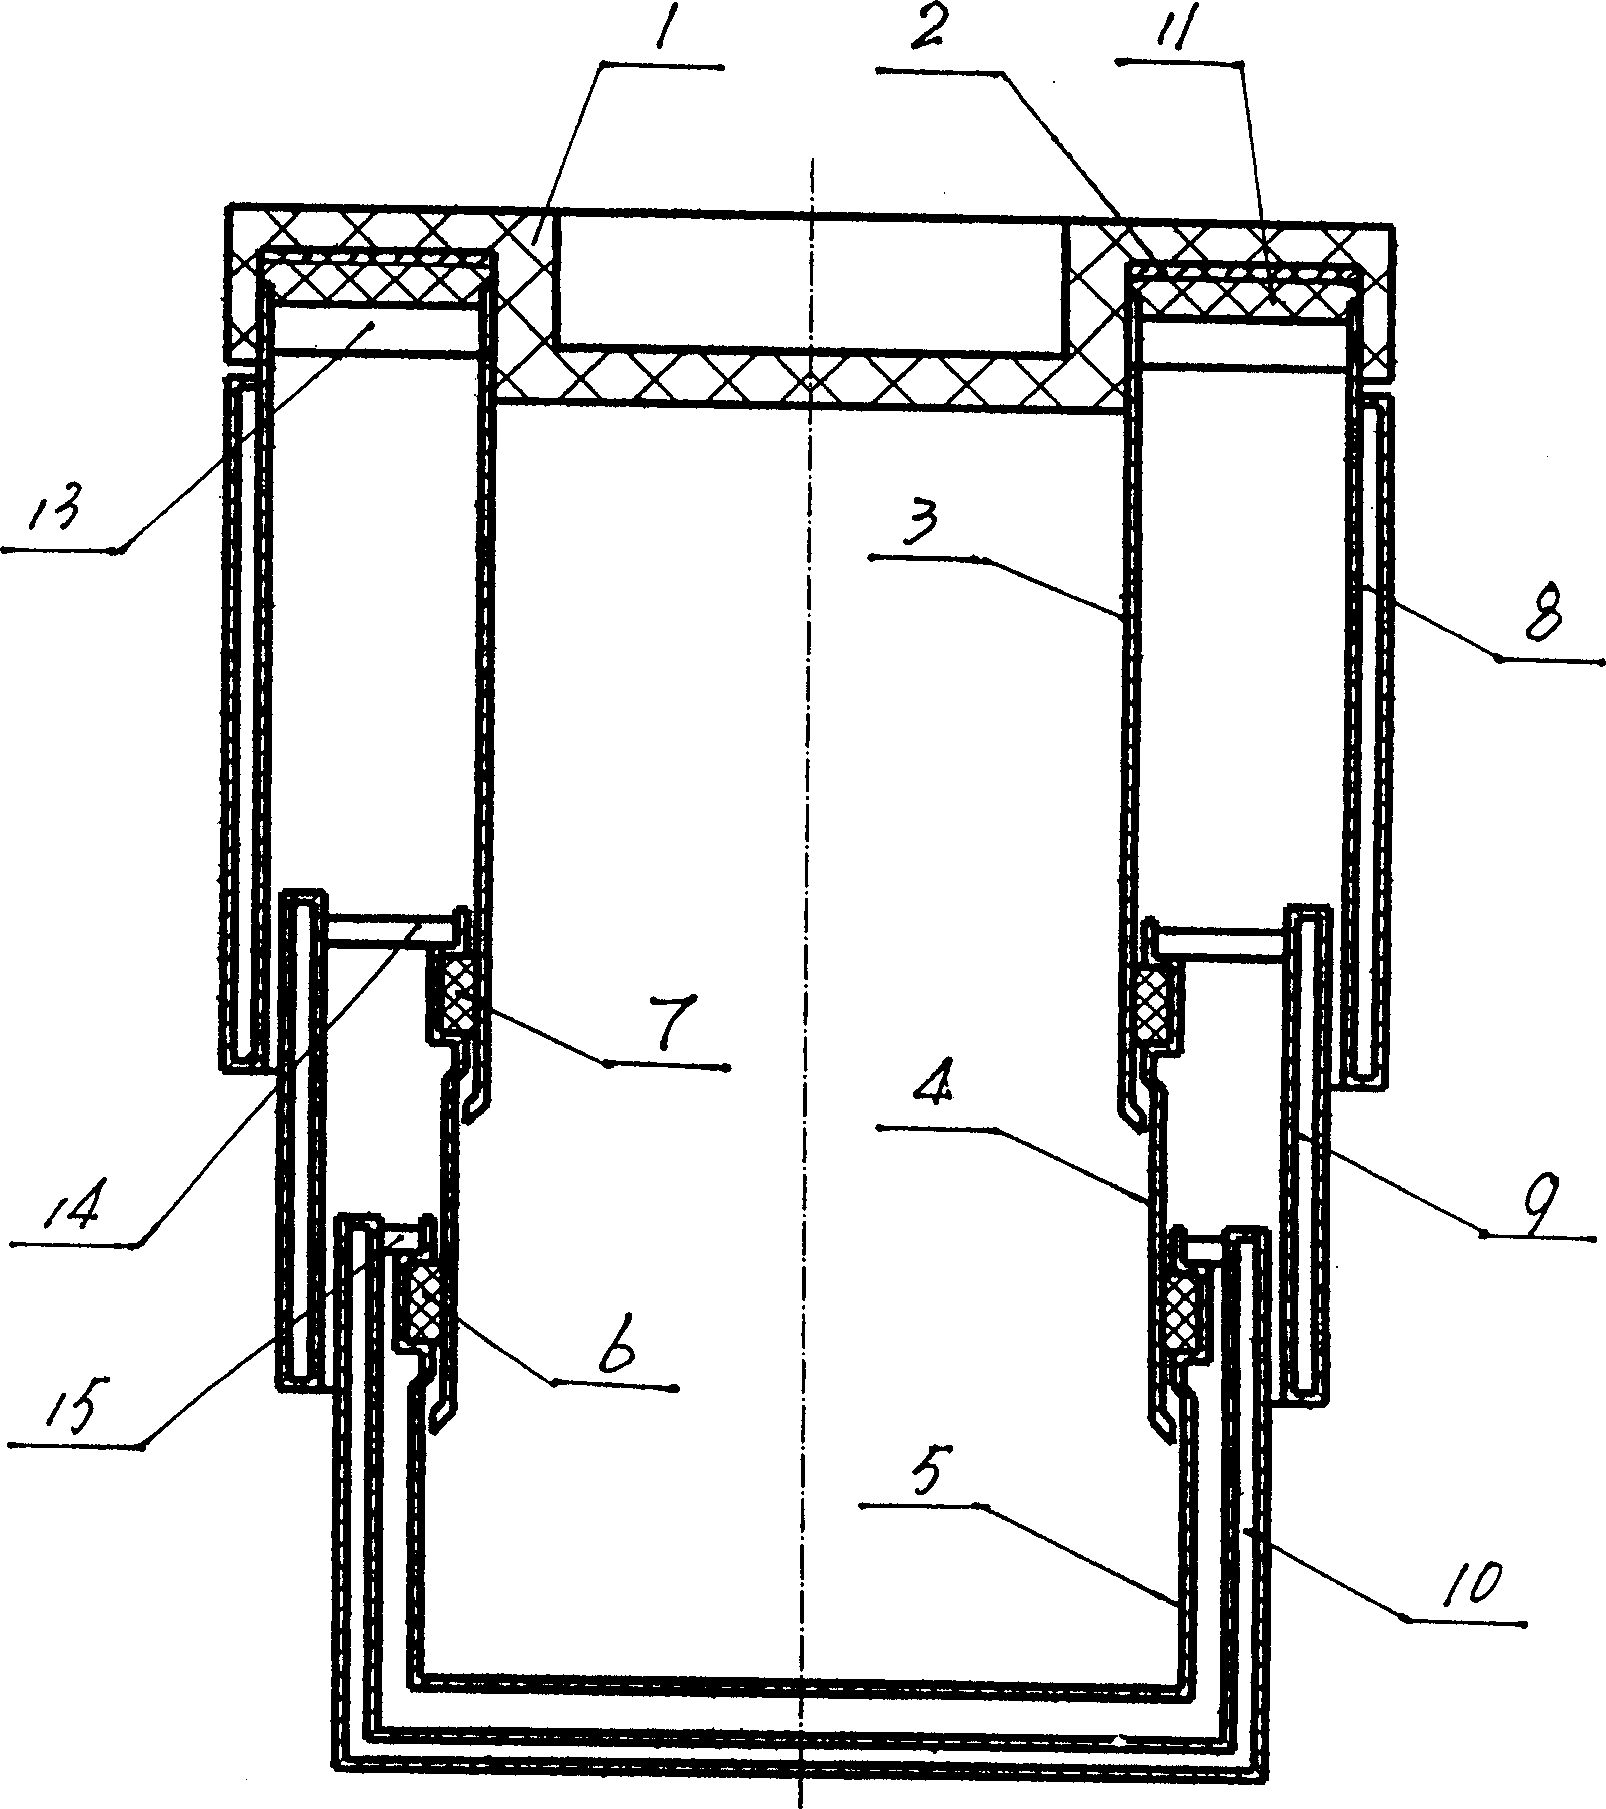 Telescopic heat insulating container